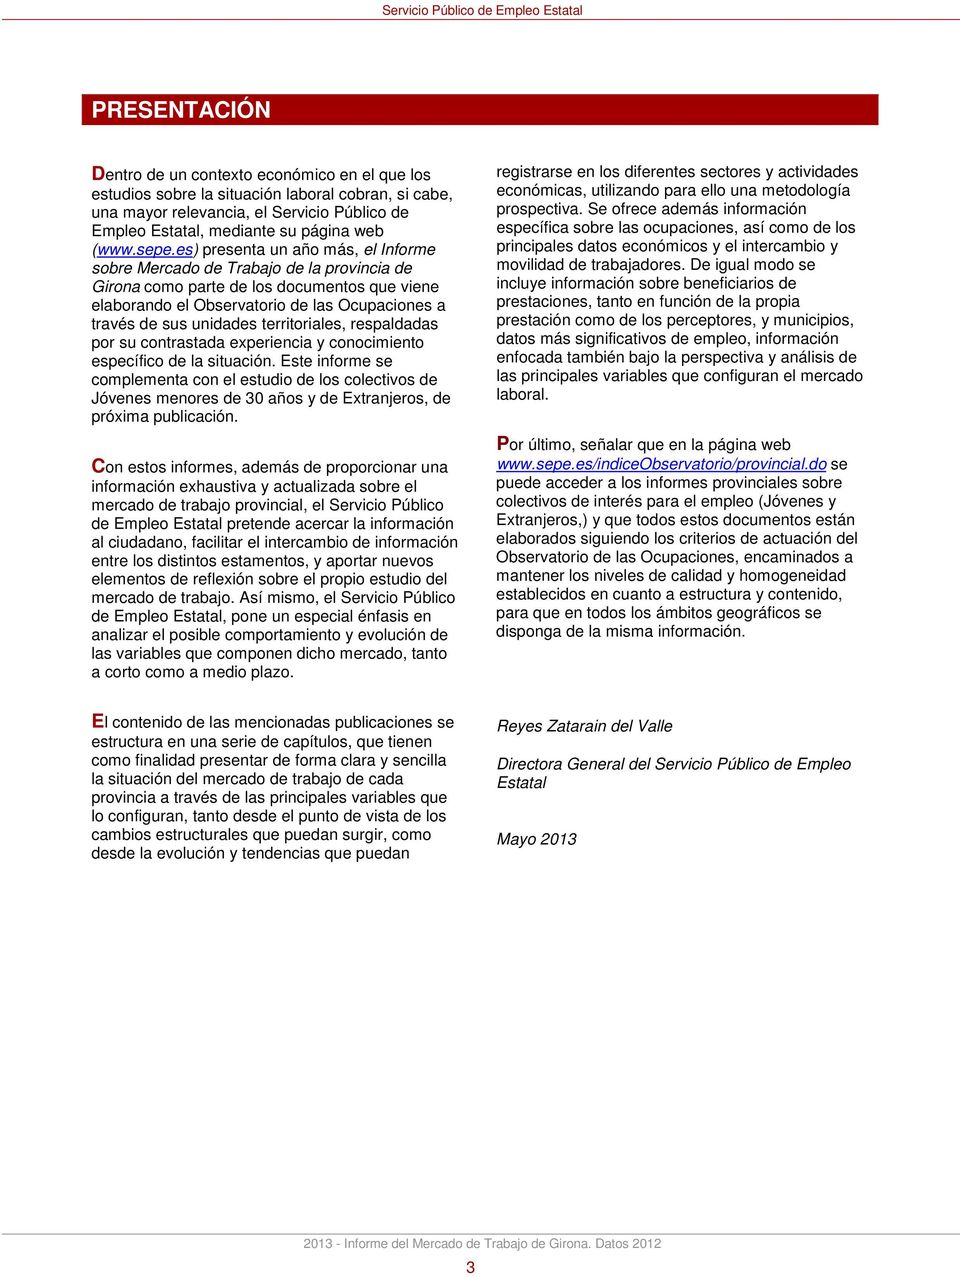 es) presenta un año más, el Informe sobre Mercado de Trabajo de la provincia de Girona como parte de los documentos que viene elaborando el Observatorio de las Ocupaciones a través de sus unidades